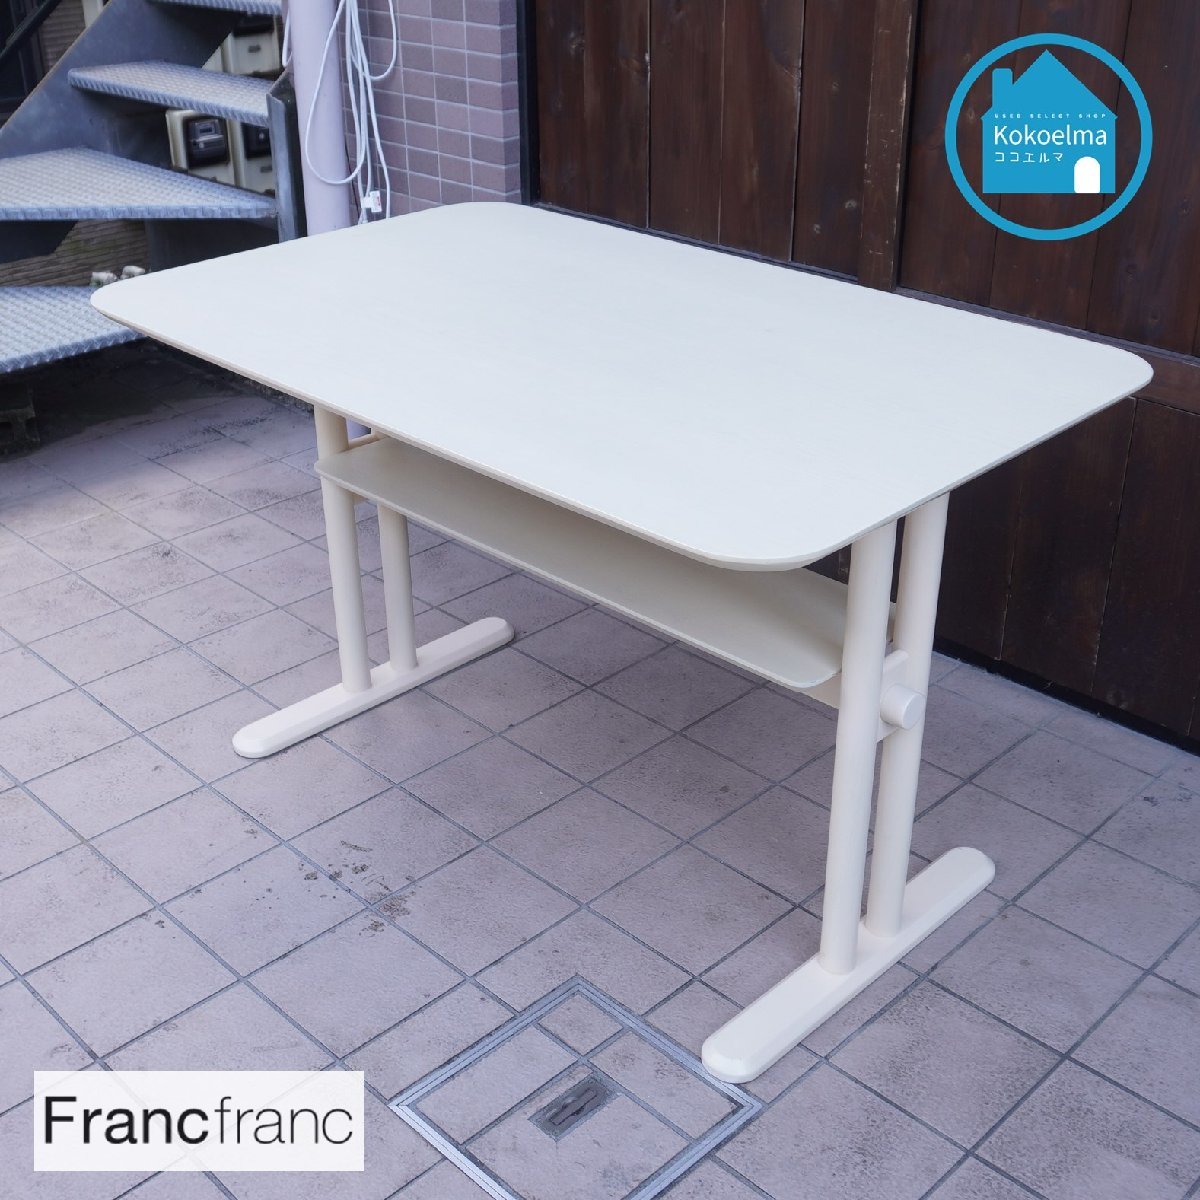 色々な Francfrancフランフラン CI234 カフェ風 北欧スタイル 白 ナチュラルテイスト タモ材 ダイニングテーブル ピオニ ホワイトアッシュ材 Francfranc（フランフラン）